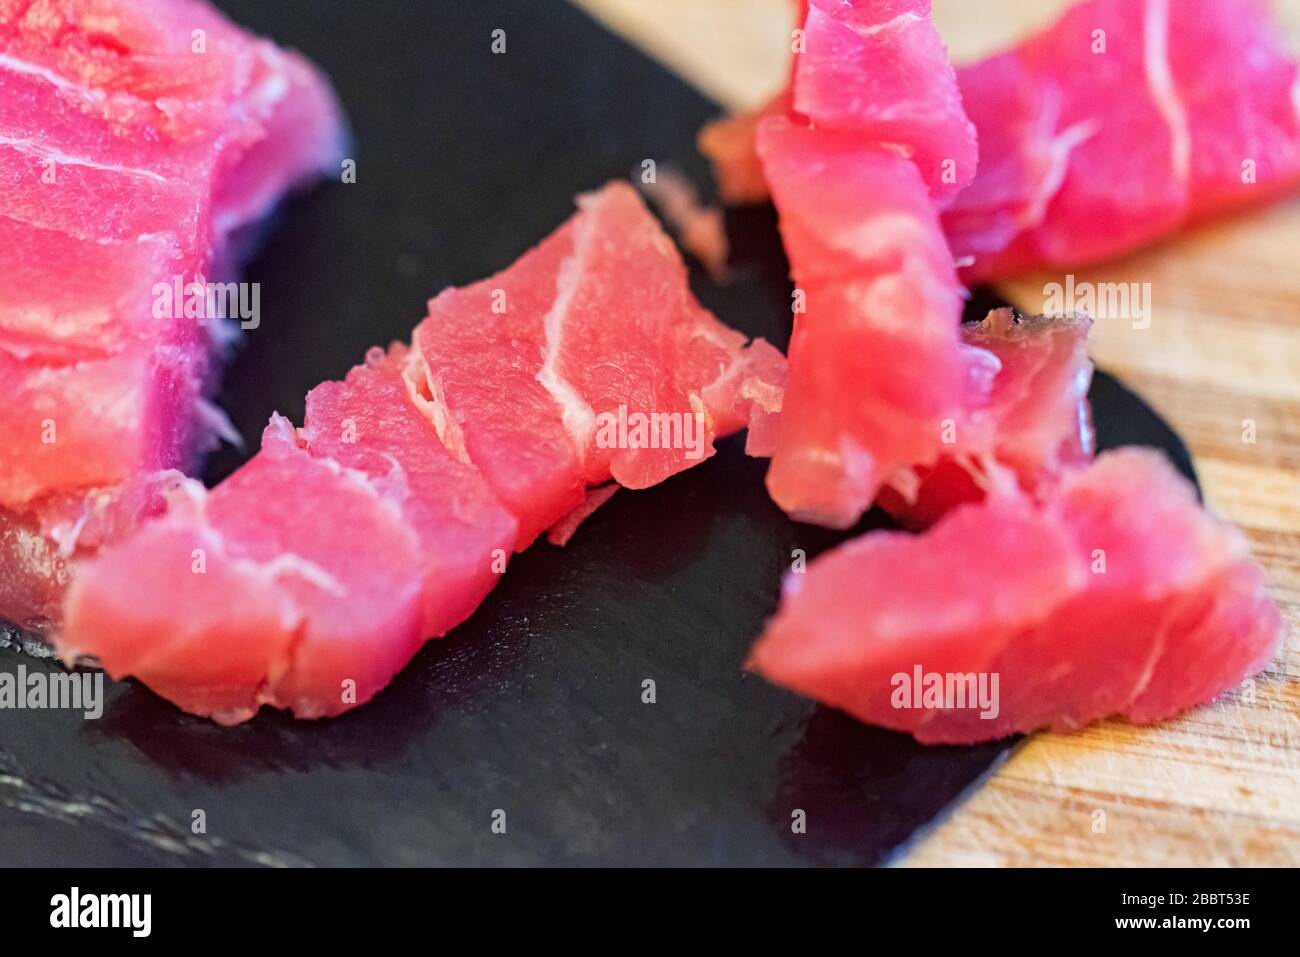 Immagine ravvicinata di pezzi di filetto di tonno affumicato preparato Foto Stock